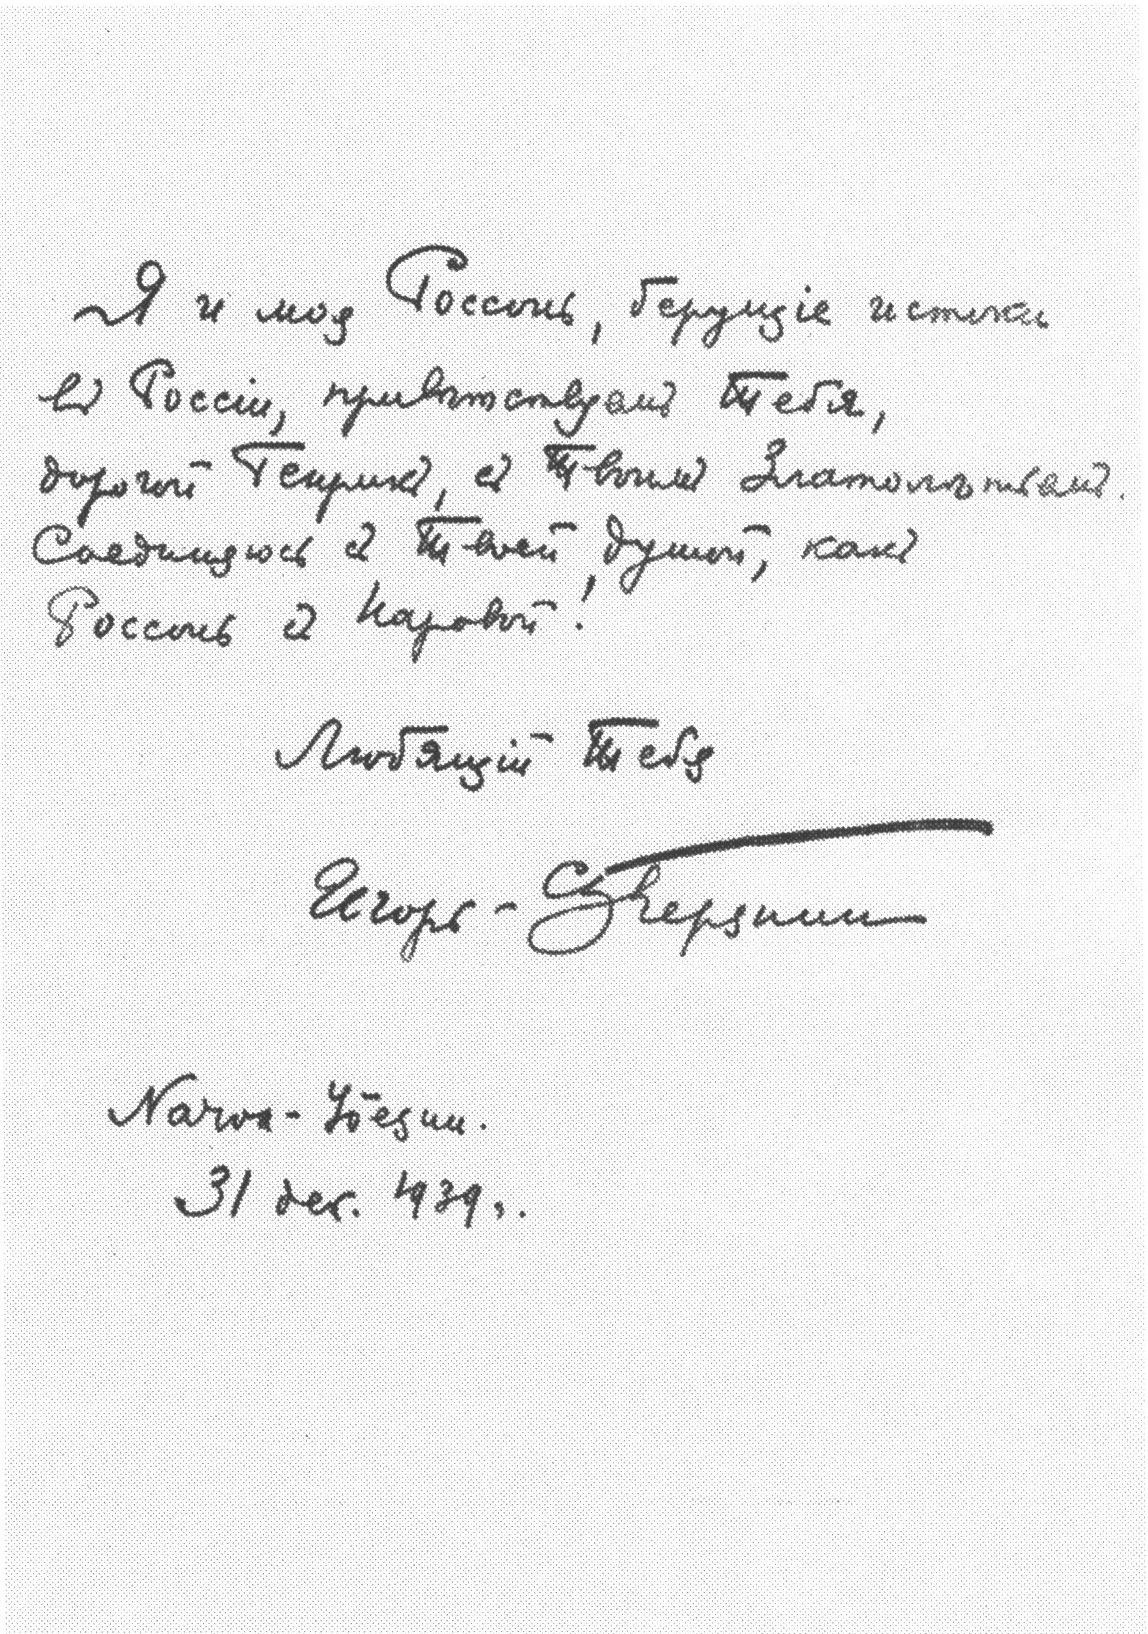 Автограф Игоря Северянина Генриху Виснапу. 31 декабря 1939 г. Эстонский литературный музей